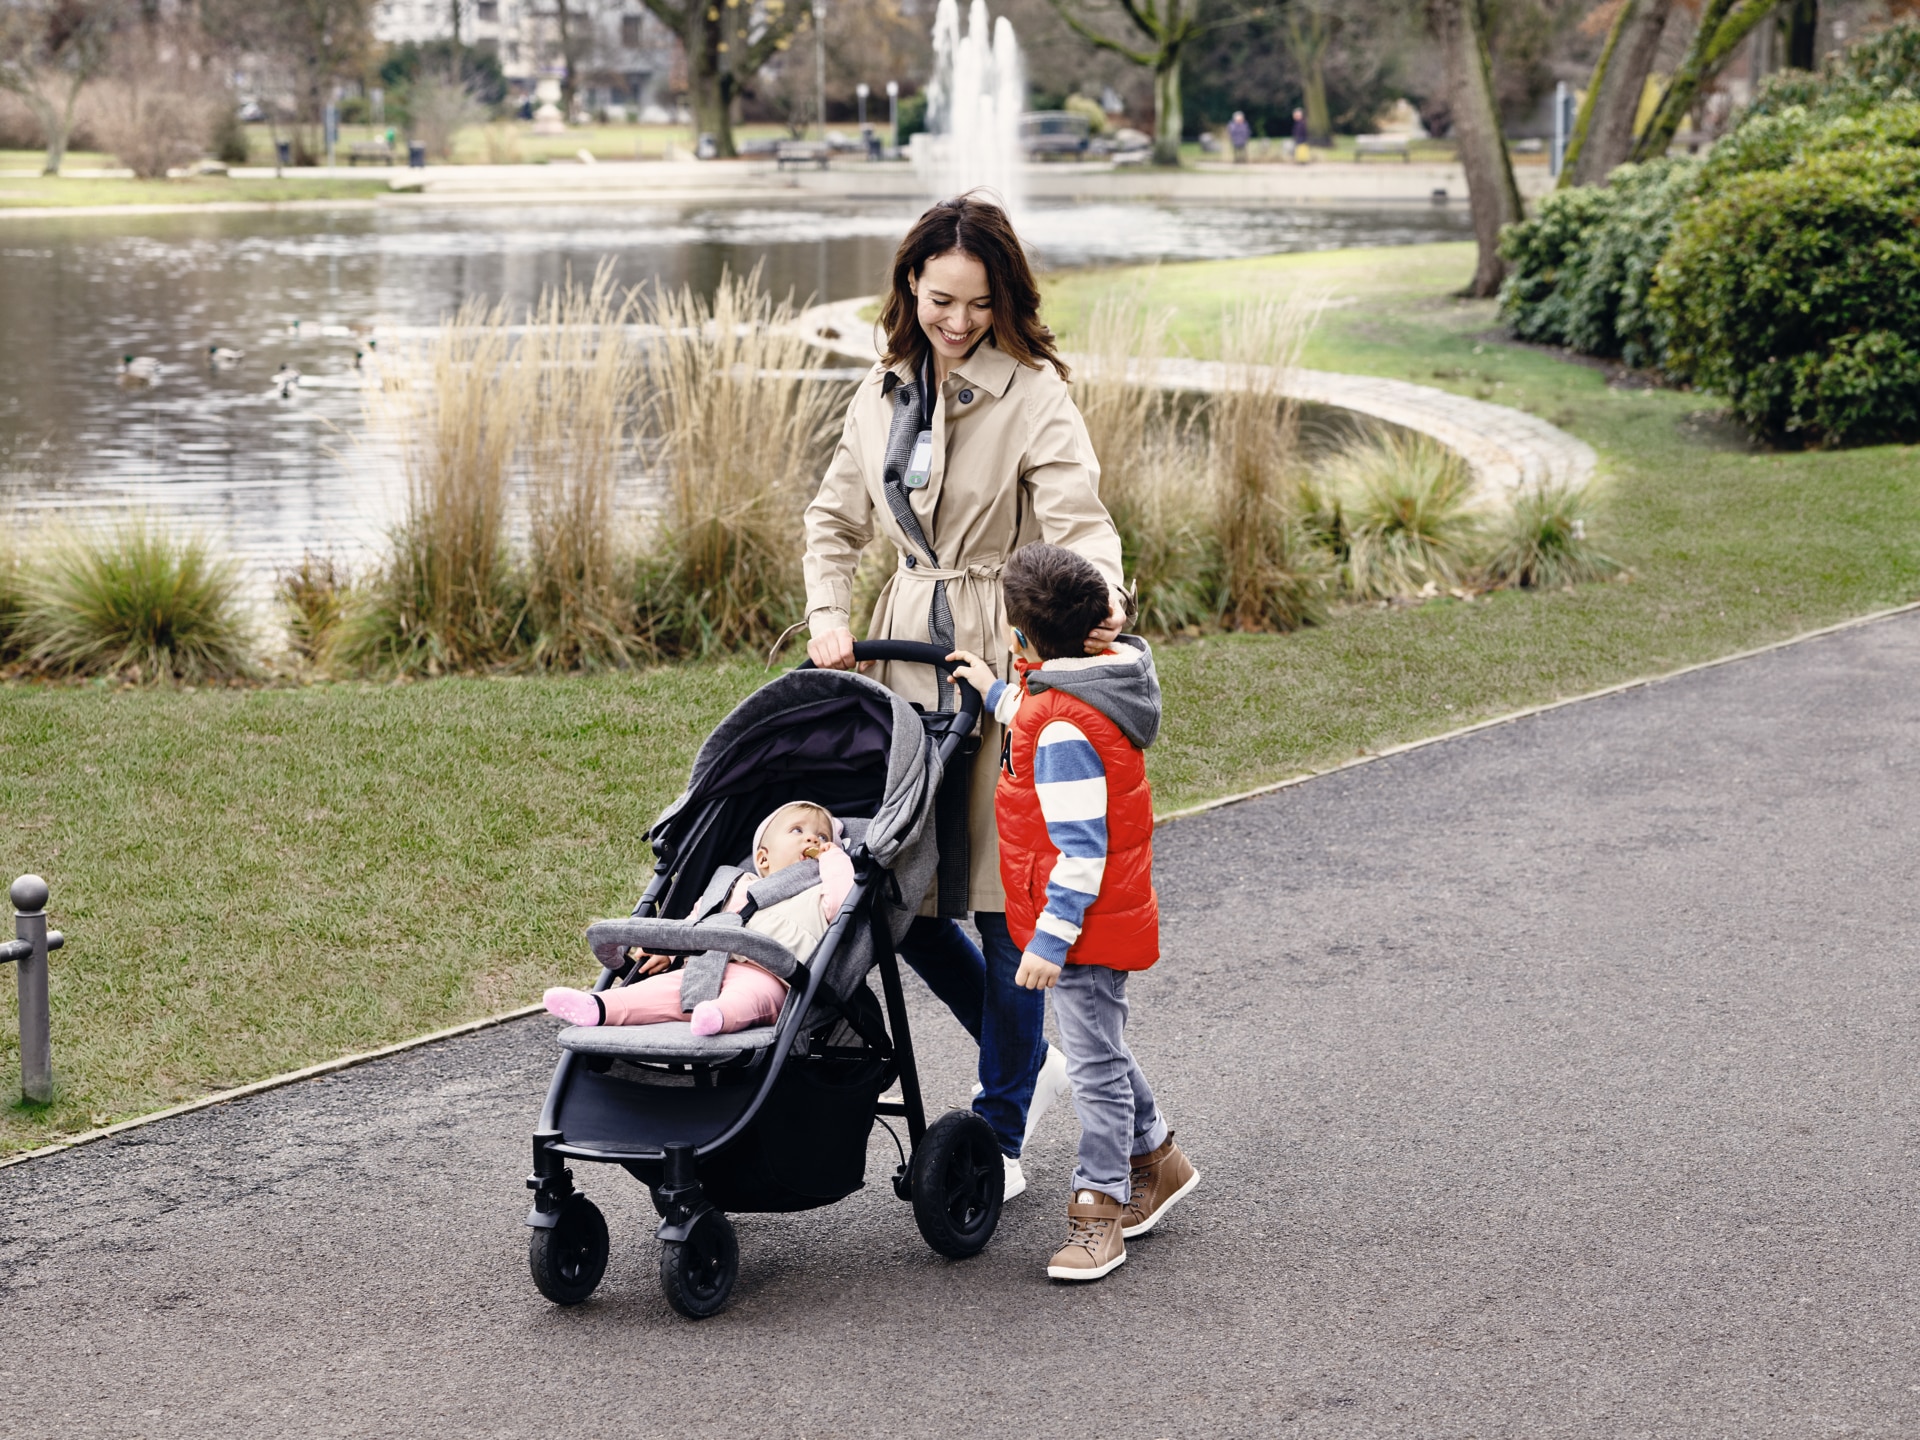 Giovane madre in un parco con i suoi due figli, uno dei quali porta un apparecchio acustico.